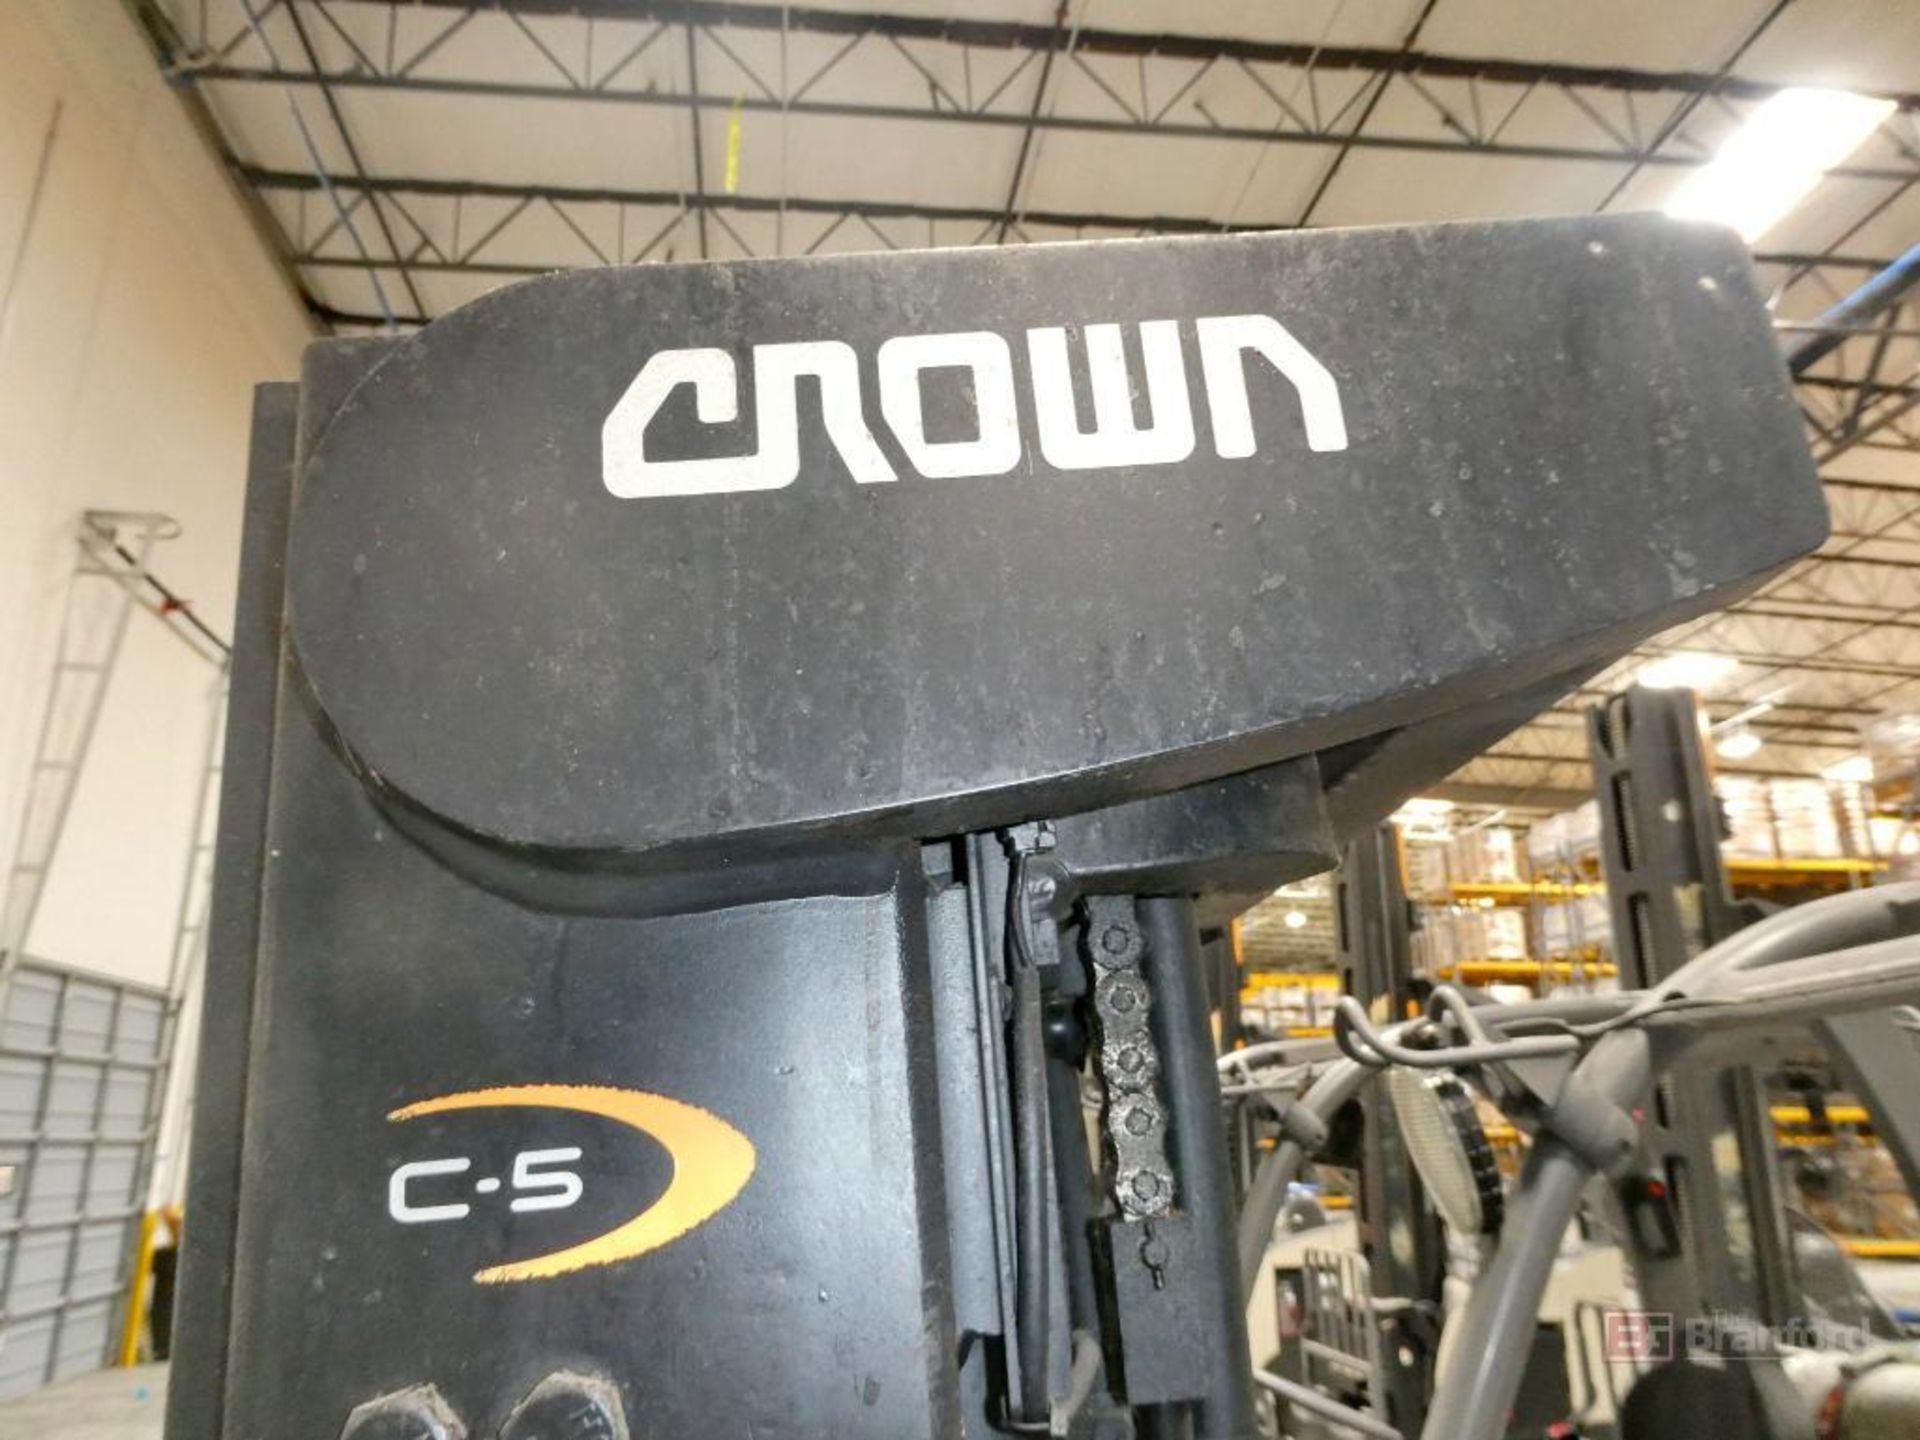 2019 Crown Model C5, Fork Truck - Image 8 of 9